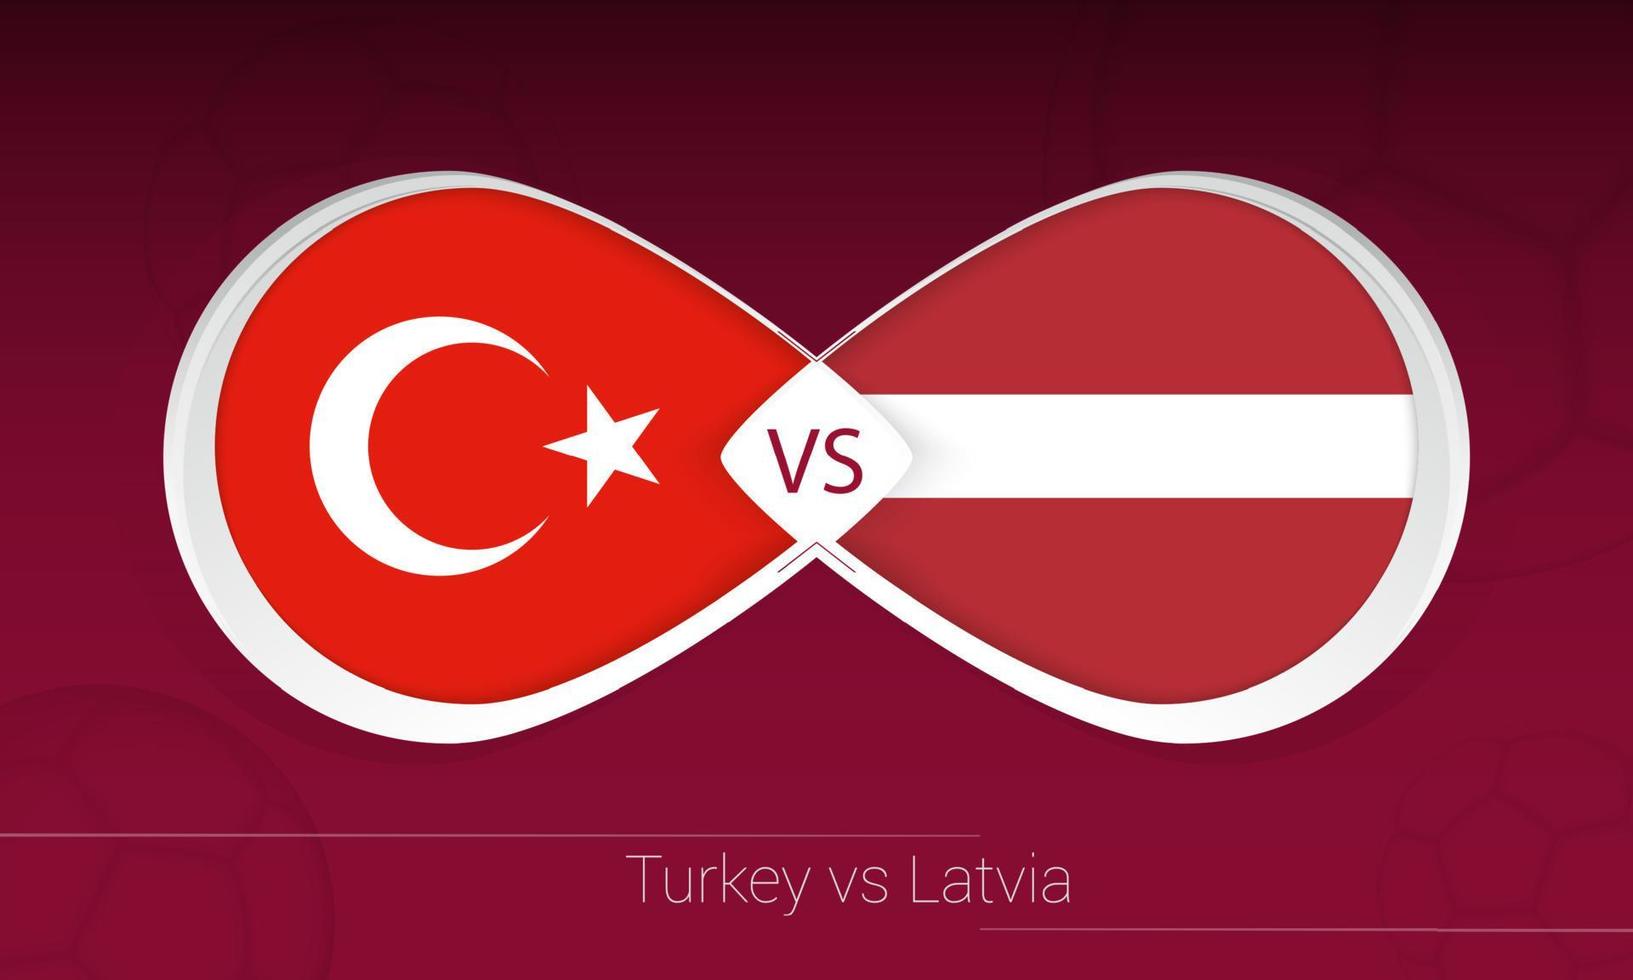 Turkiet vs Lettland i fotbollstävling, grupp g. kontra ikonen på fotboll bakgrund. vektor